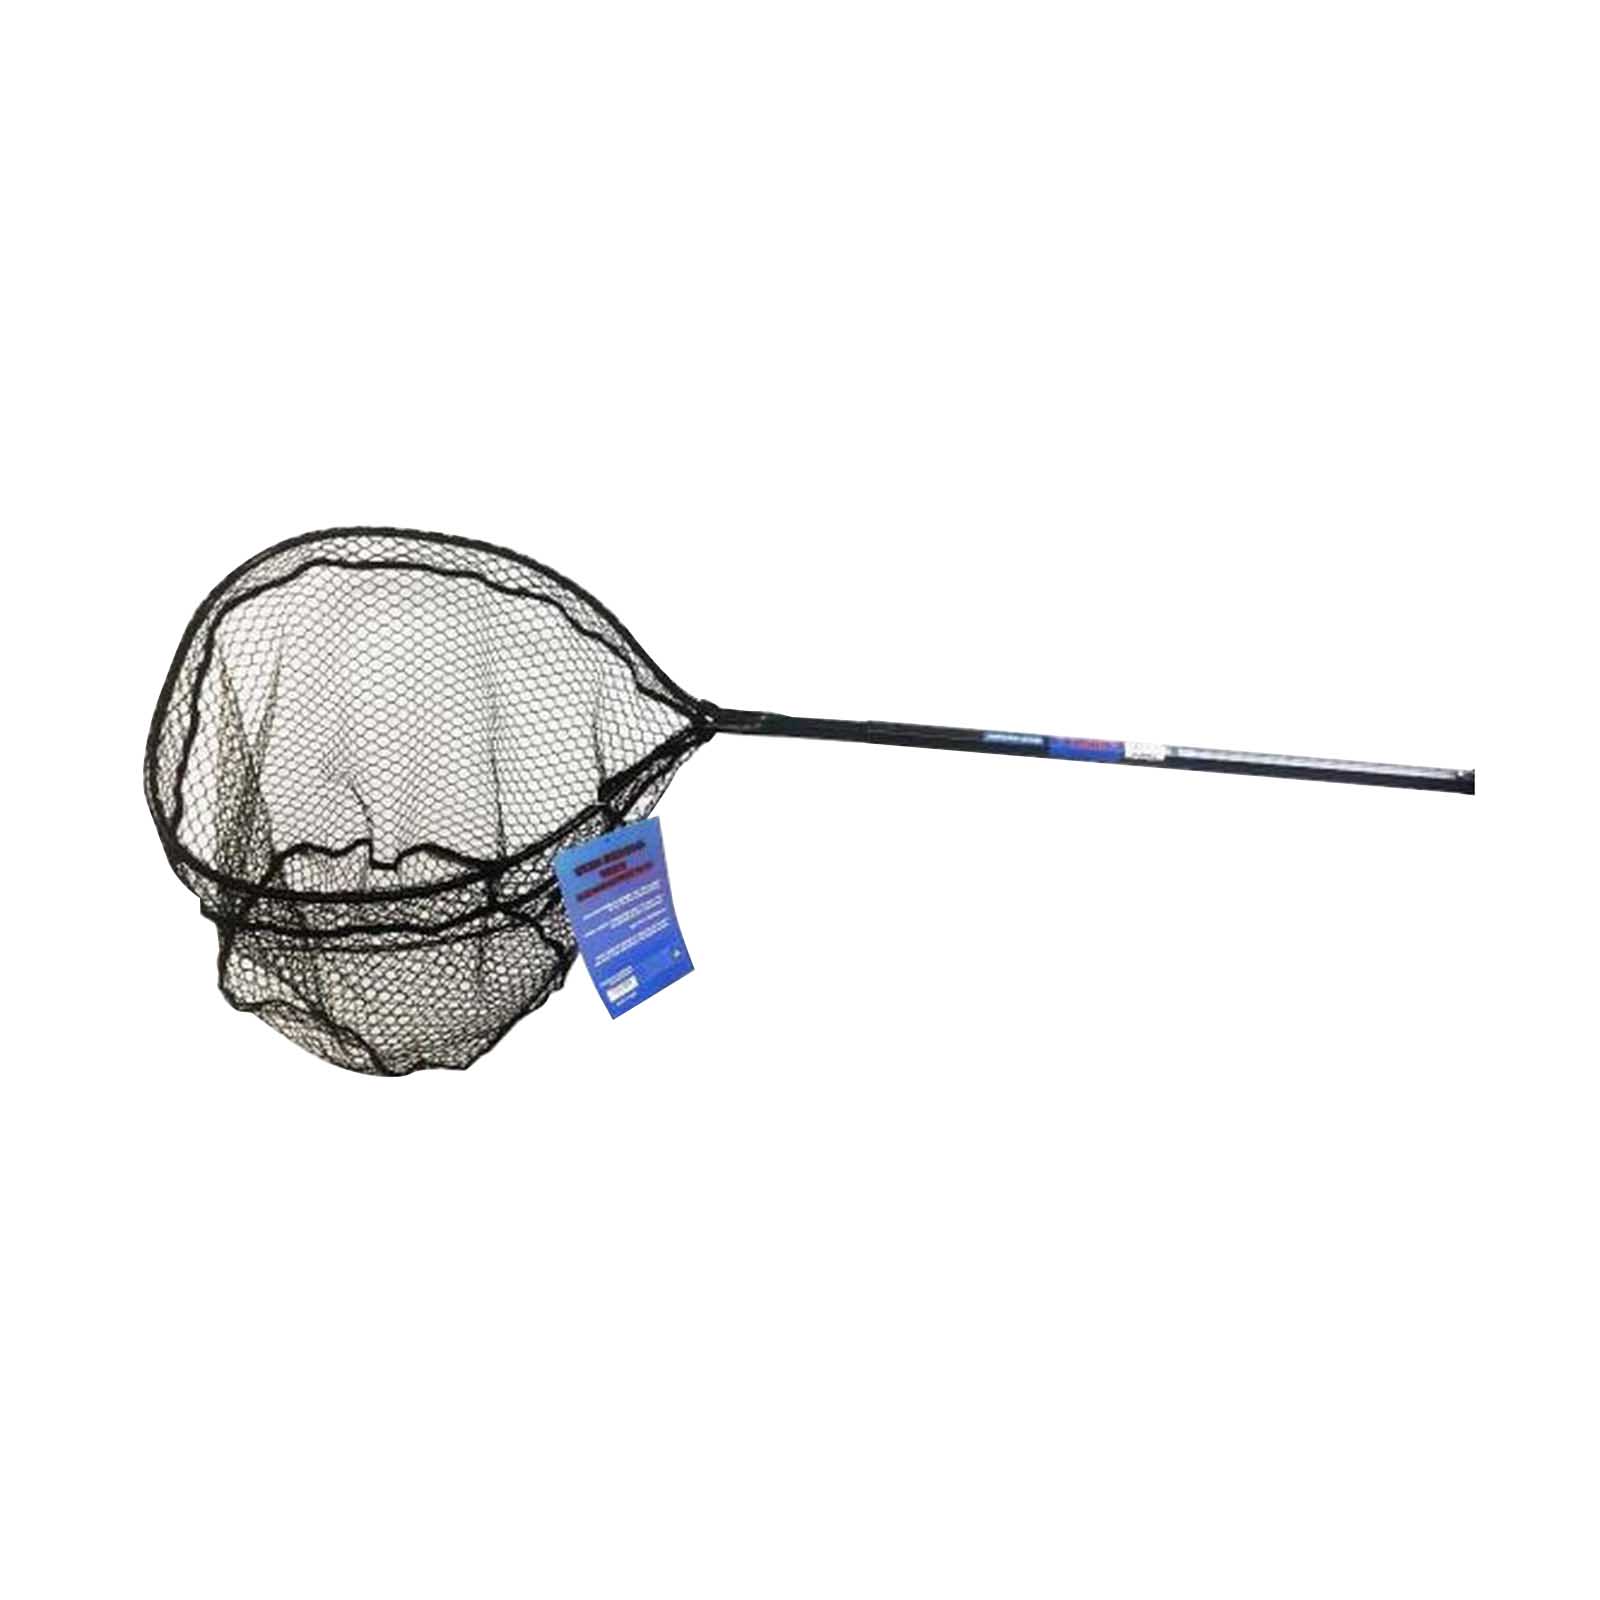 Ranger Unbreakable Fiberglass Handle Fishing Net & Aluminum 17 Hoop Net